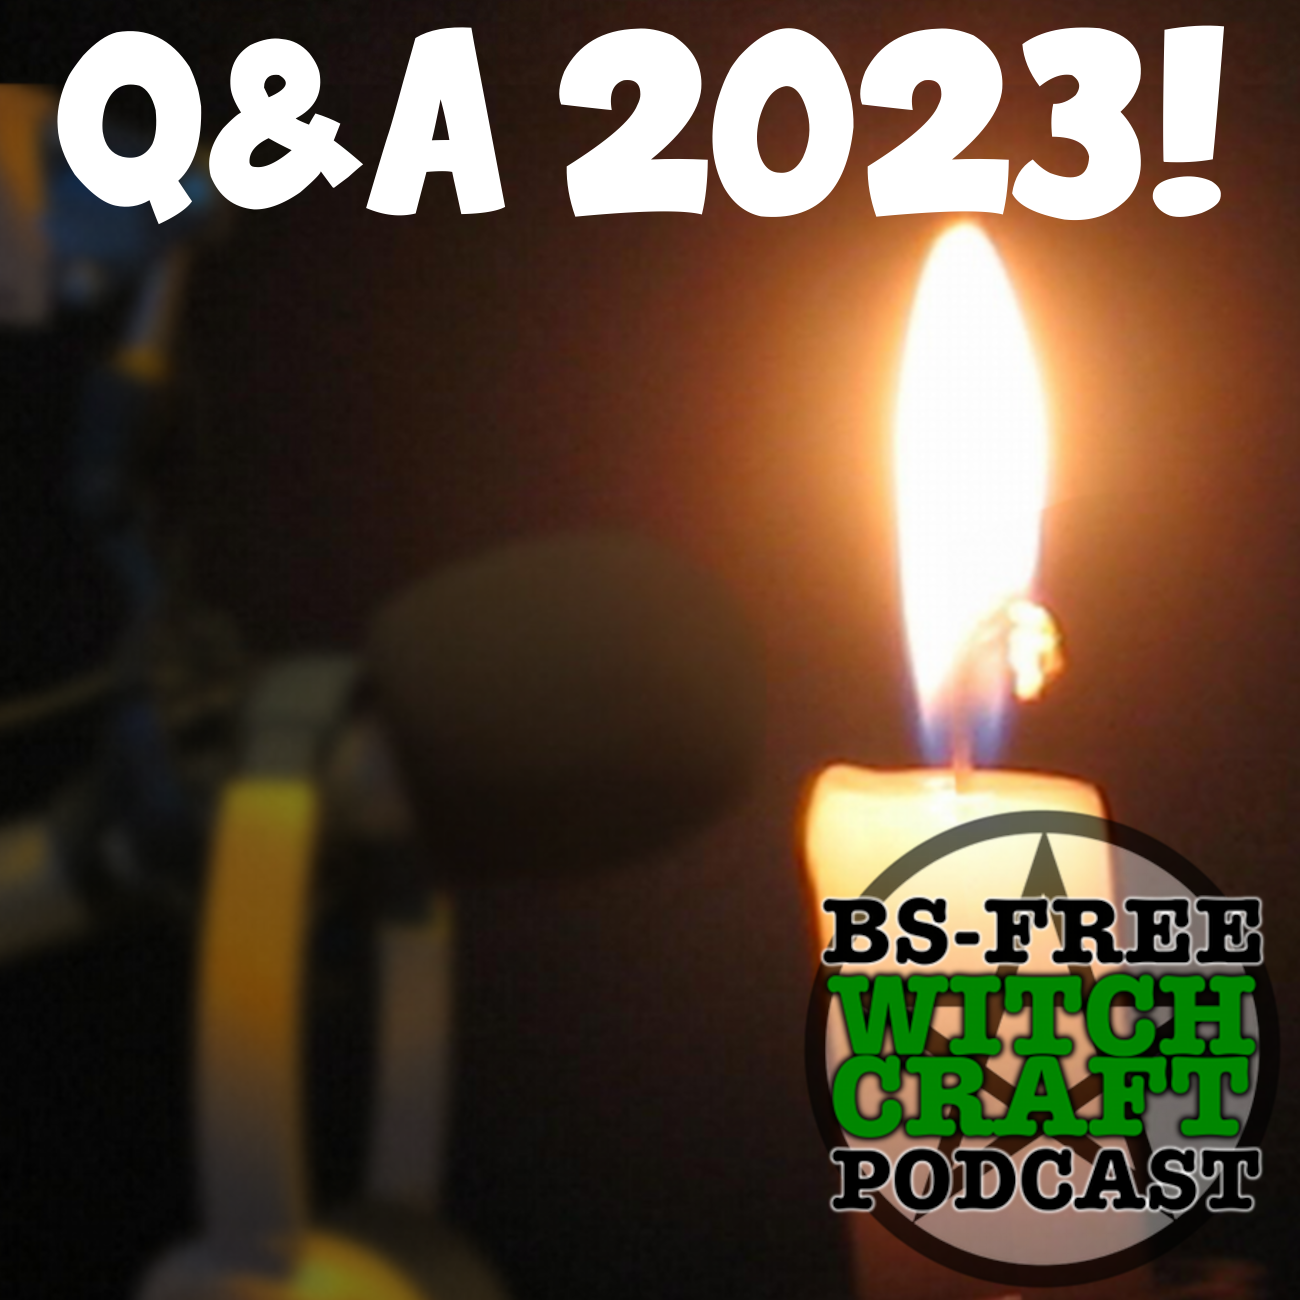 61. Feedback/Q&A Special 2023!